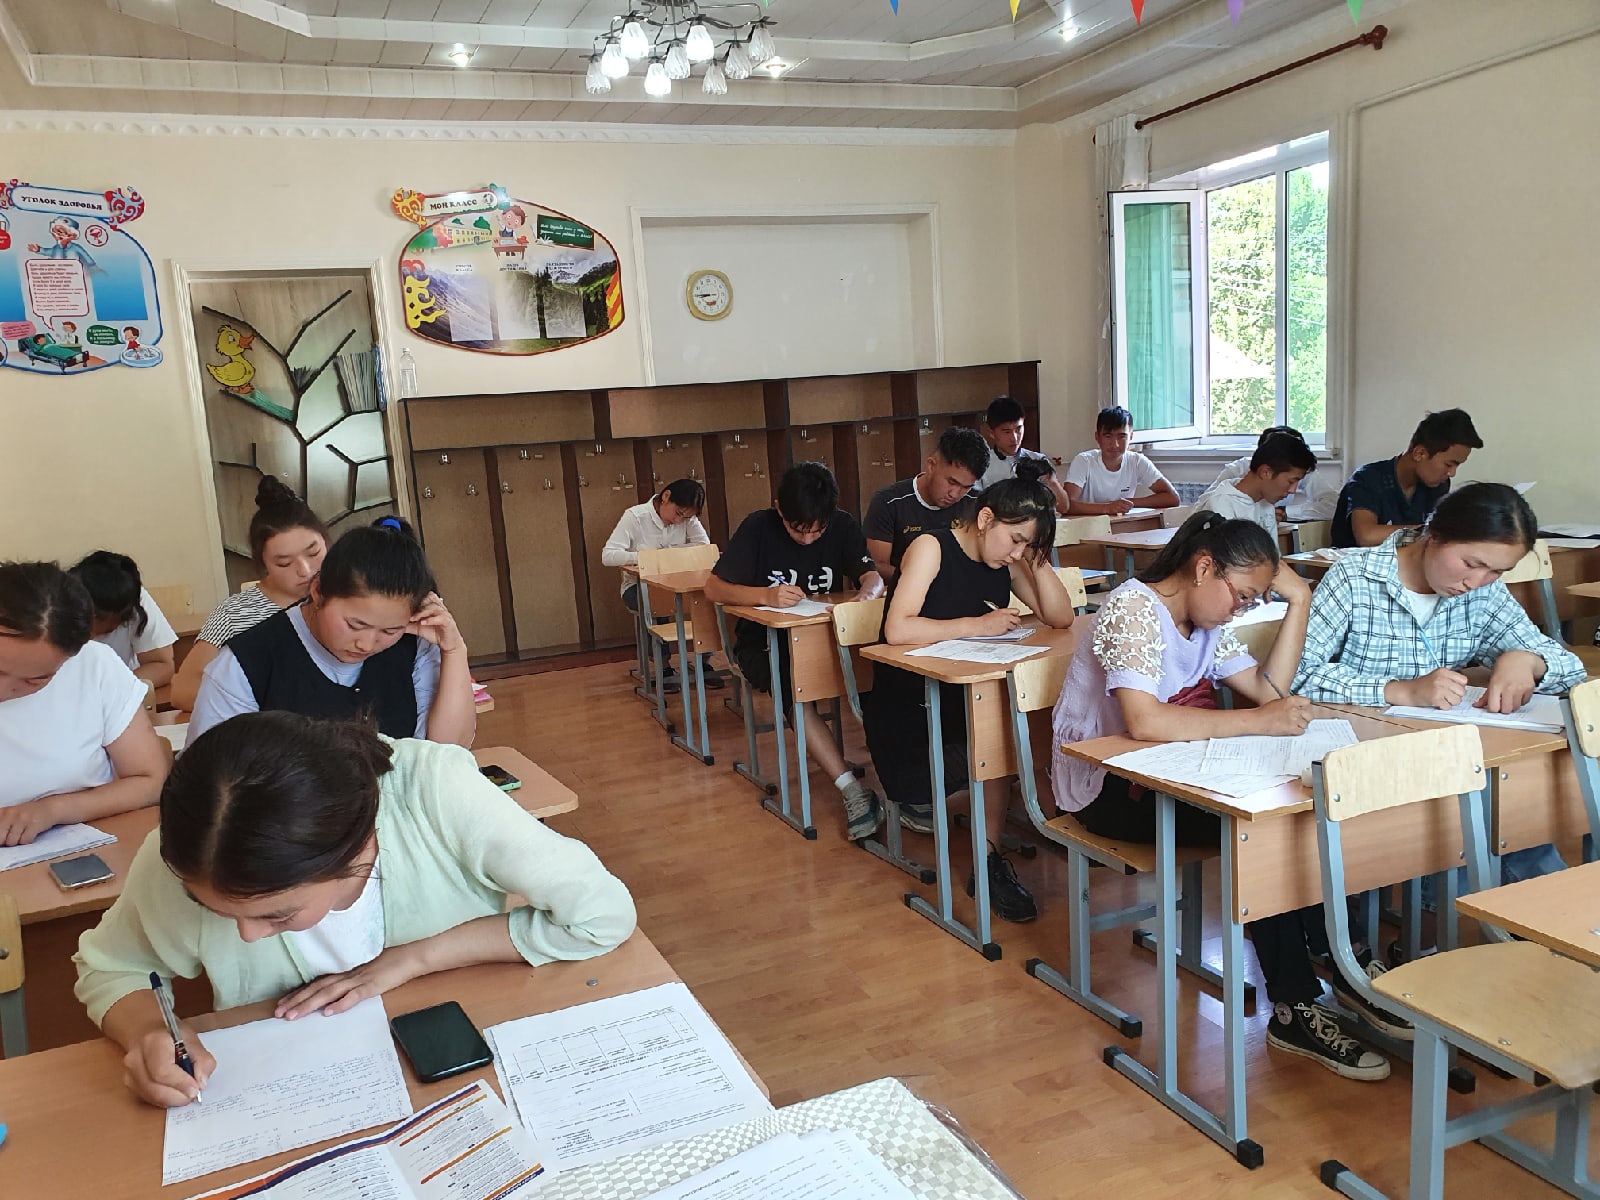 Студенты и школьники из Кыргызстана узнали, как поступить в СГУ им. Питирима Сорокина